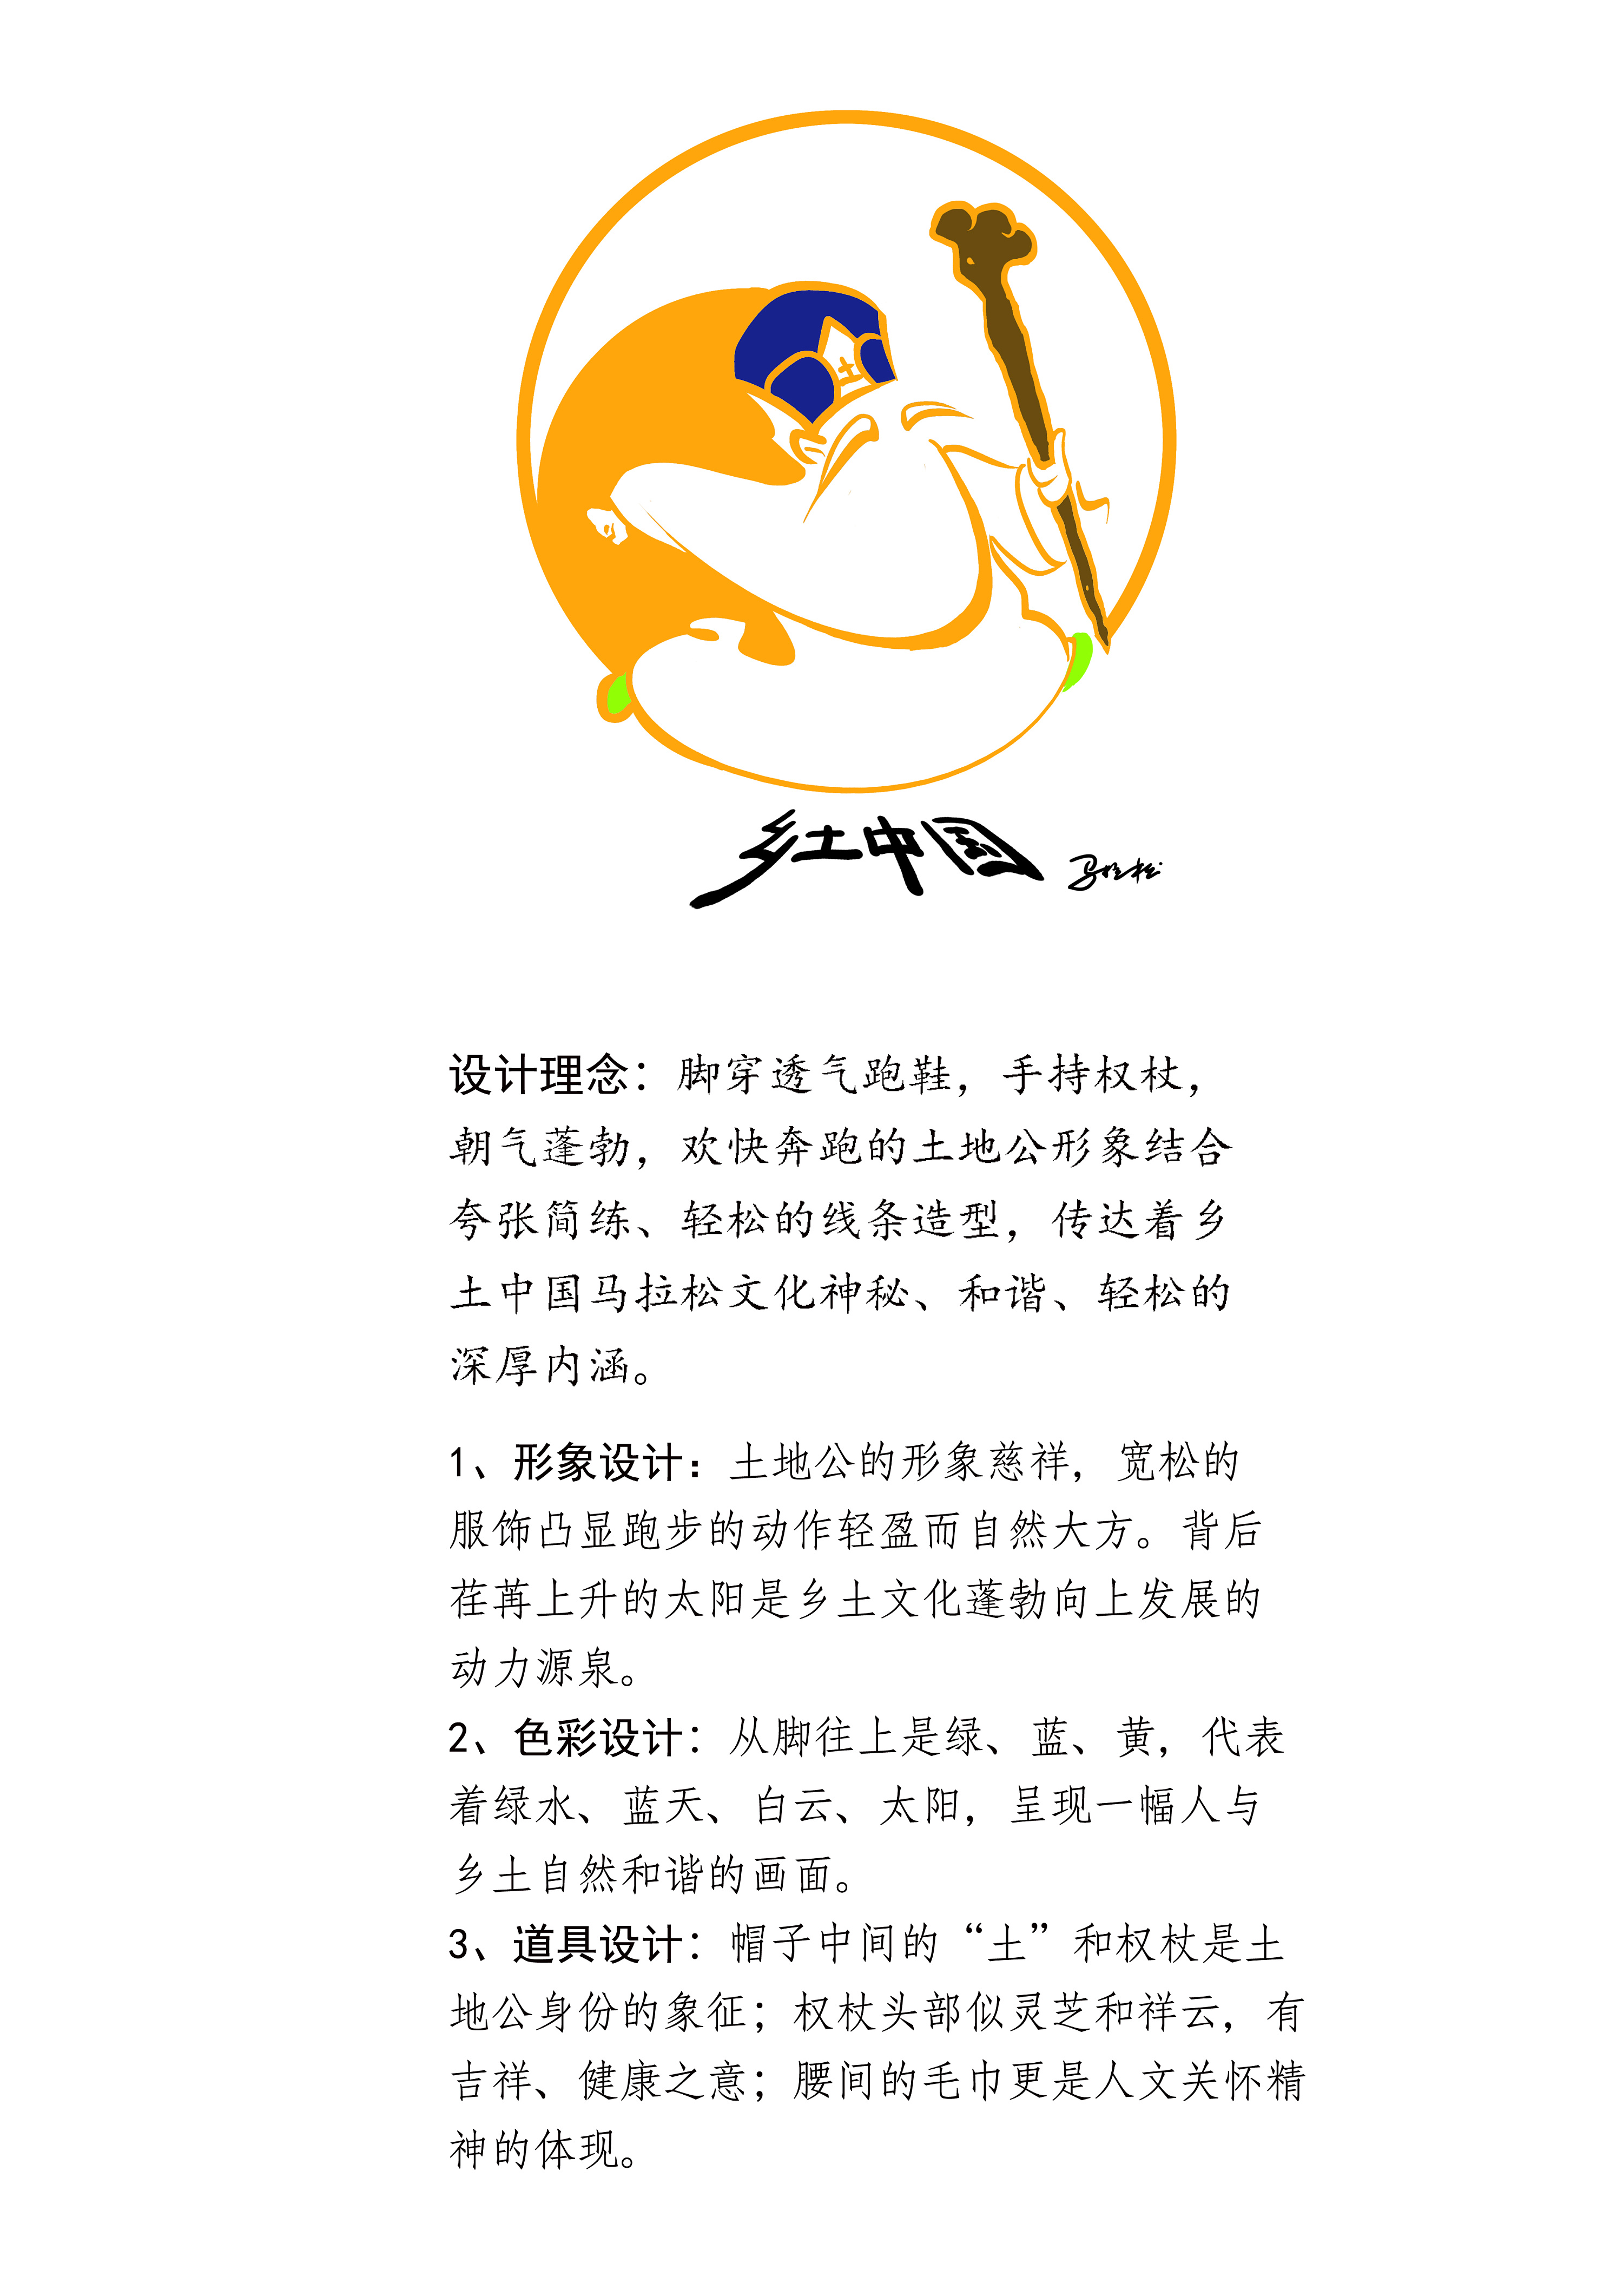 乡土中国字体图片